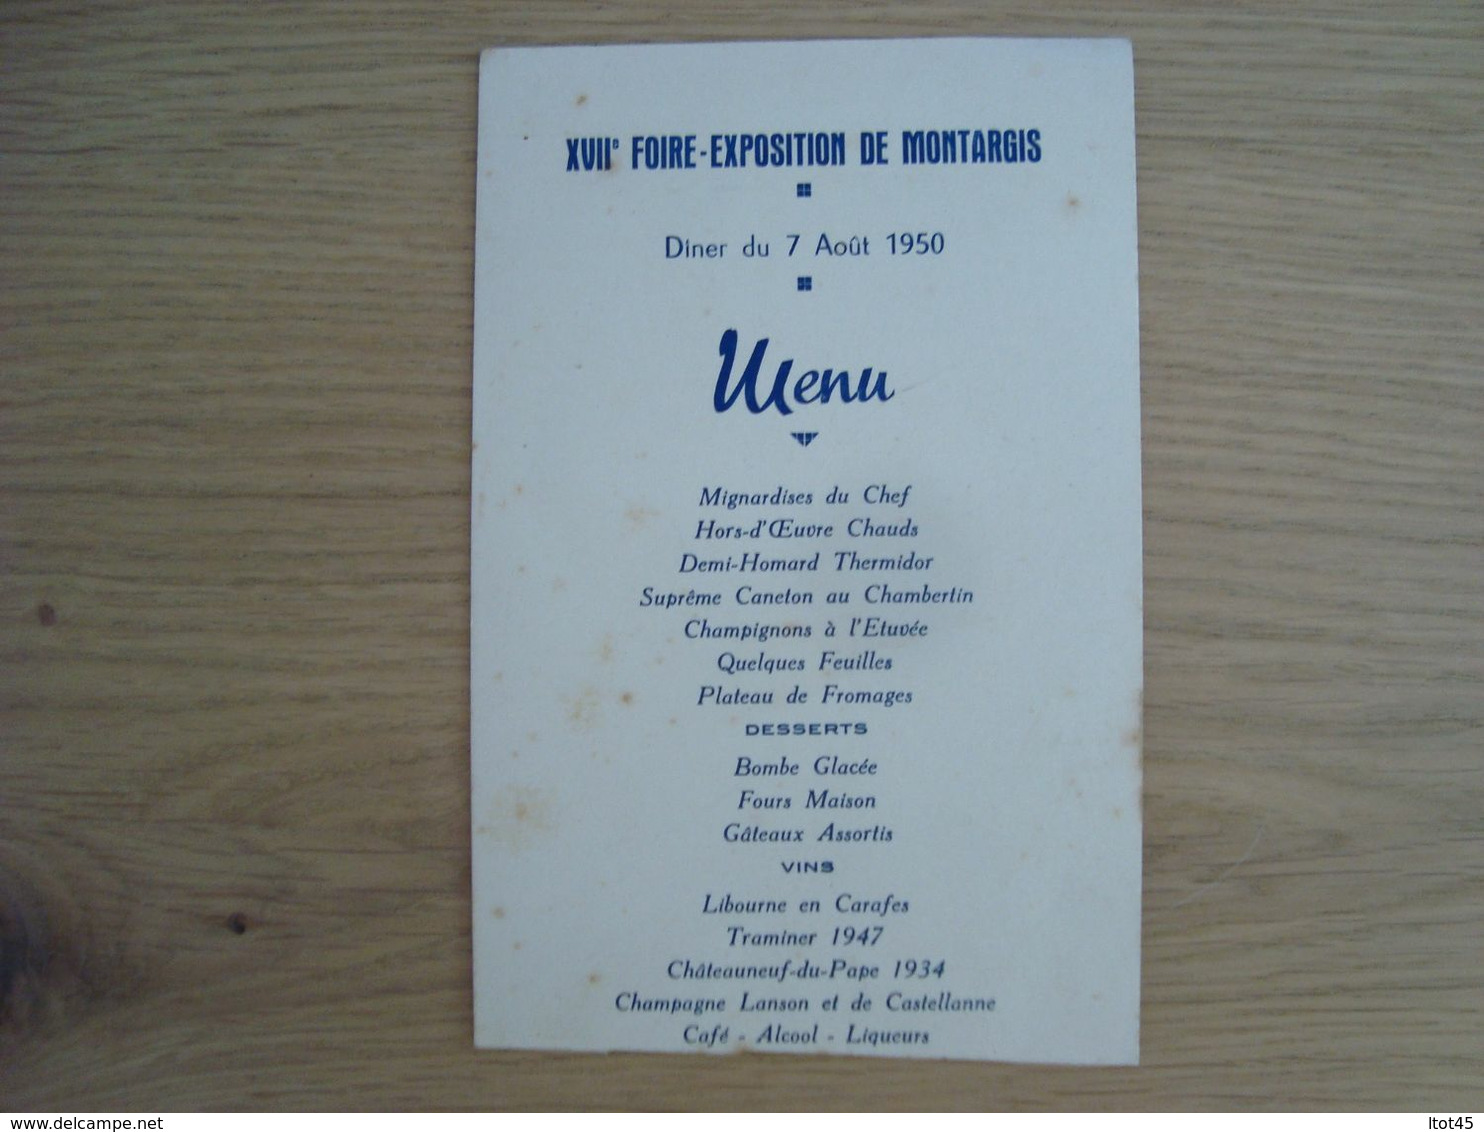 MENU 17e ANNIVERSAIRE DE LA FOIRE-EXPOSITION DE MONTARGIS 1950 - Menus